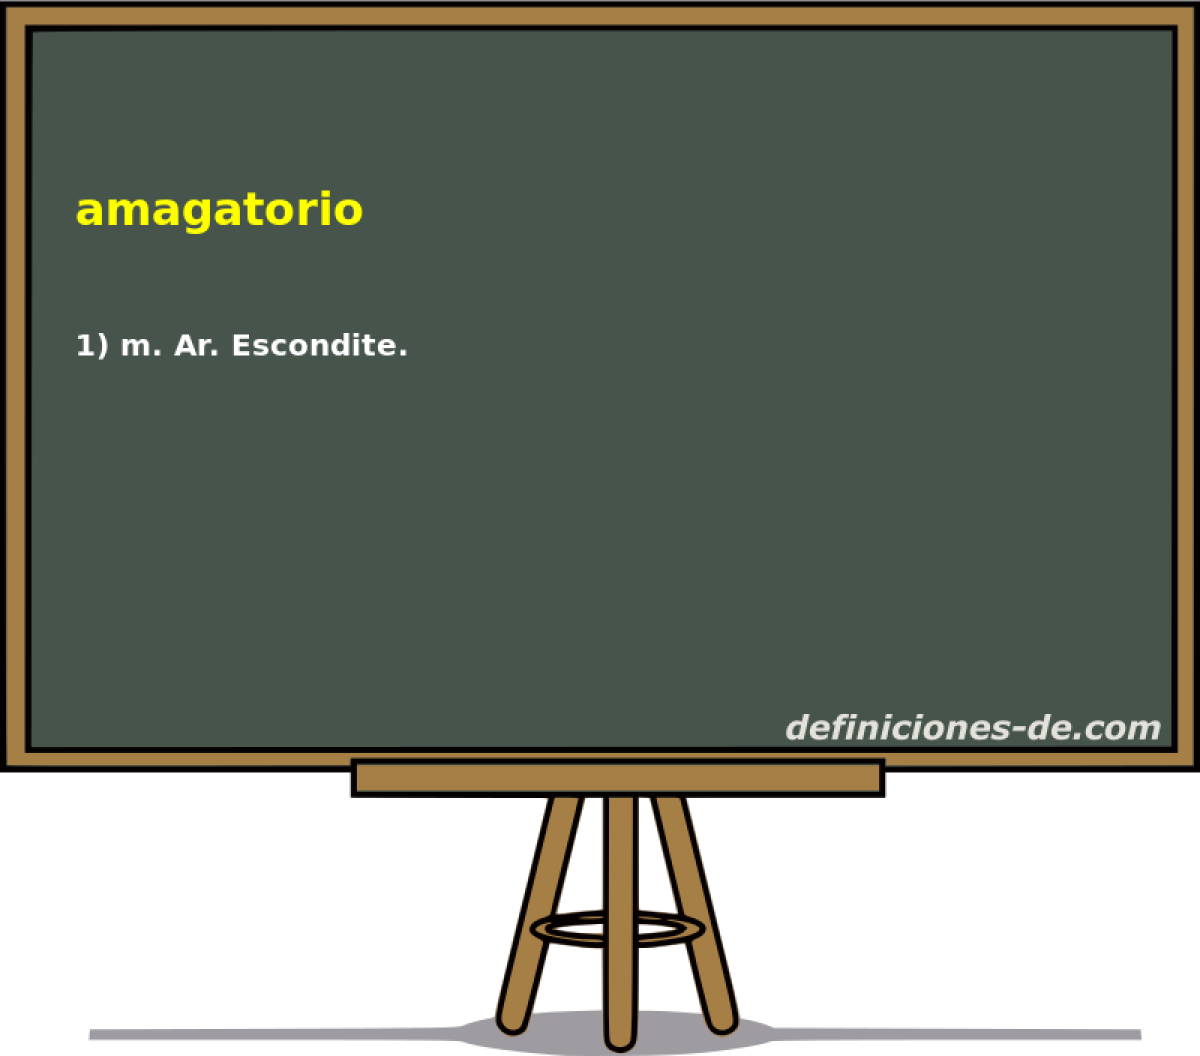 amagatorio 